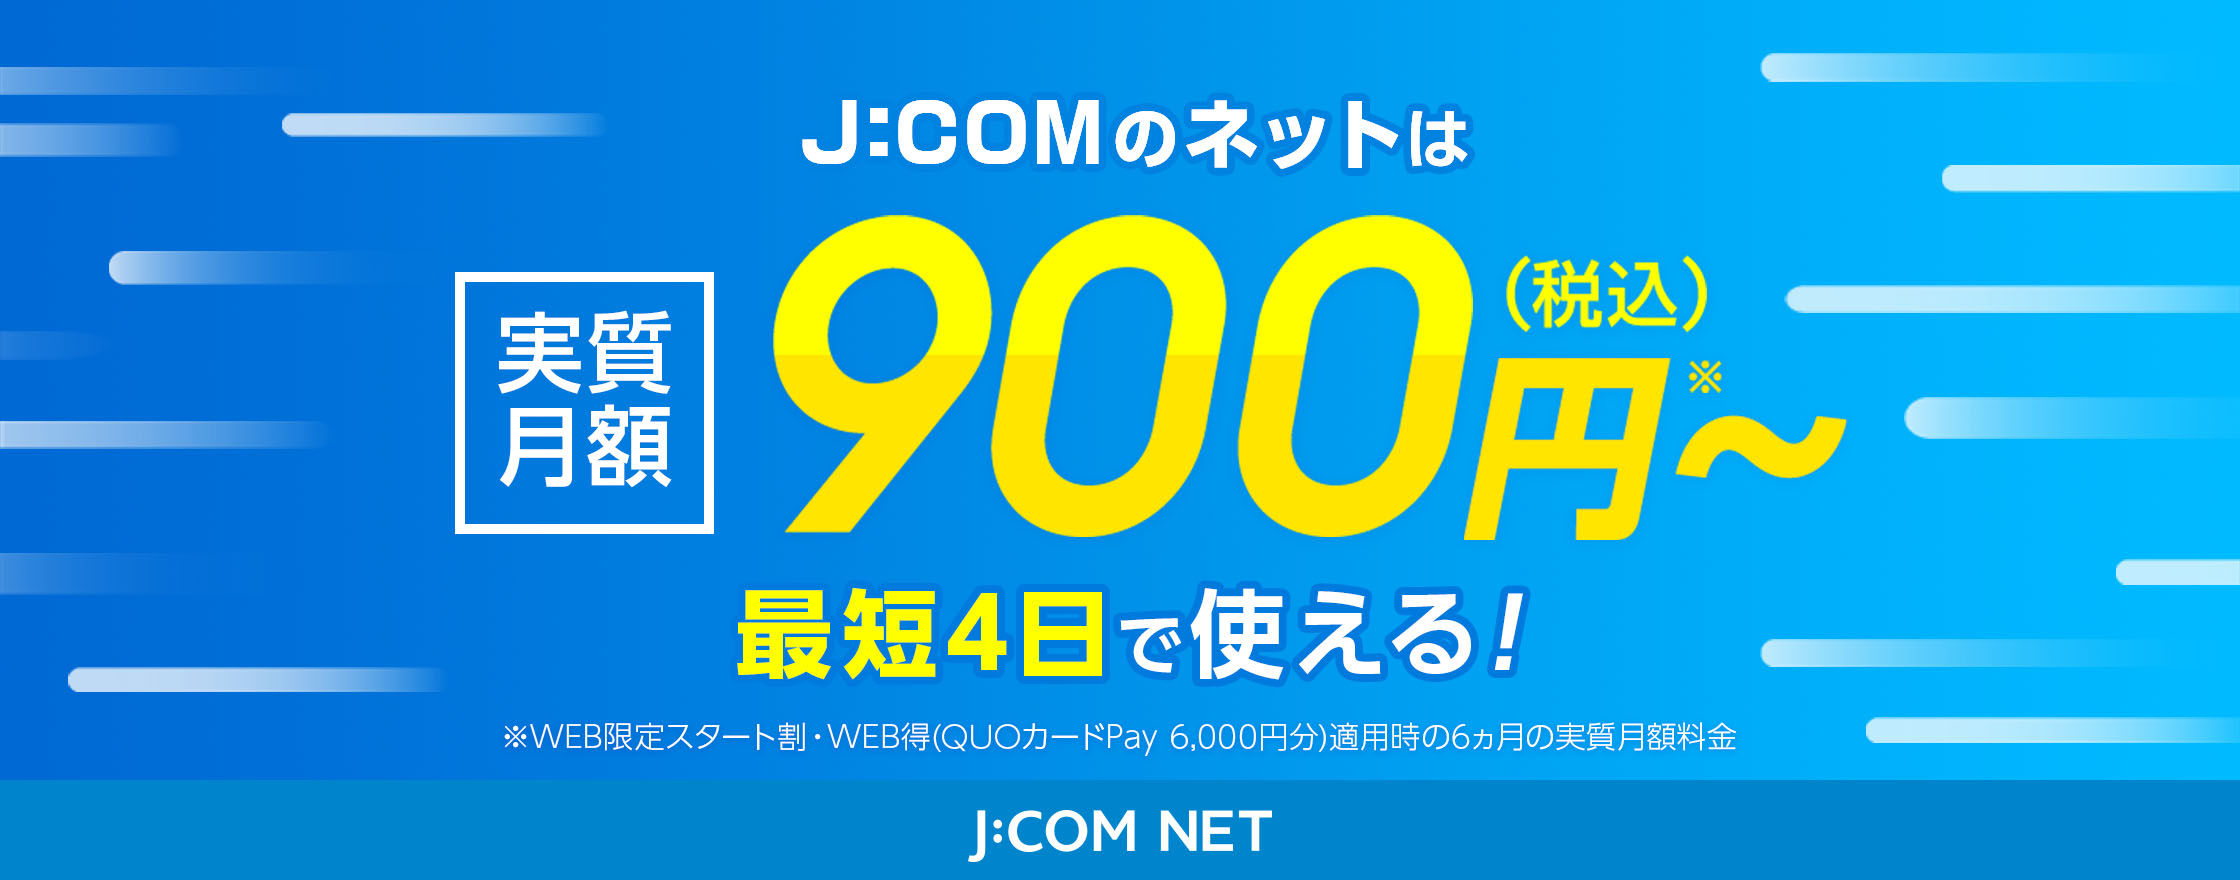 J:COMネットは実質月額900円（税込）〜 最短4日で使える！ ※WEB限定スタート割・WEB得（QUOカードPay6,000円分）適用時の6カ月の実質月額料金